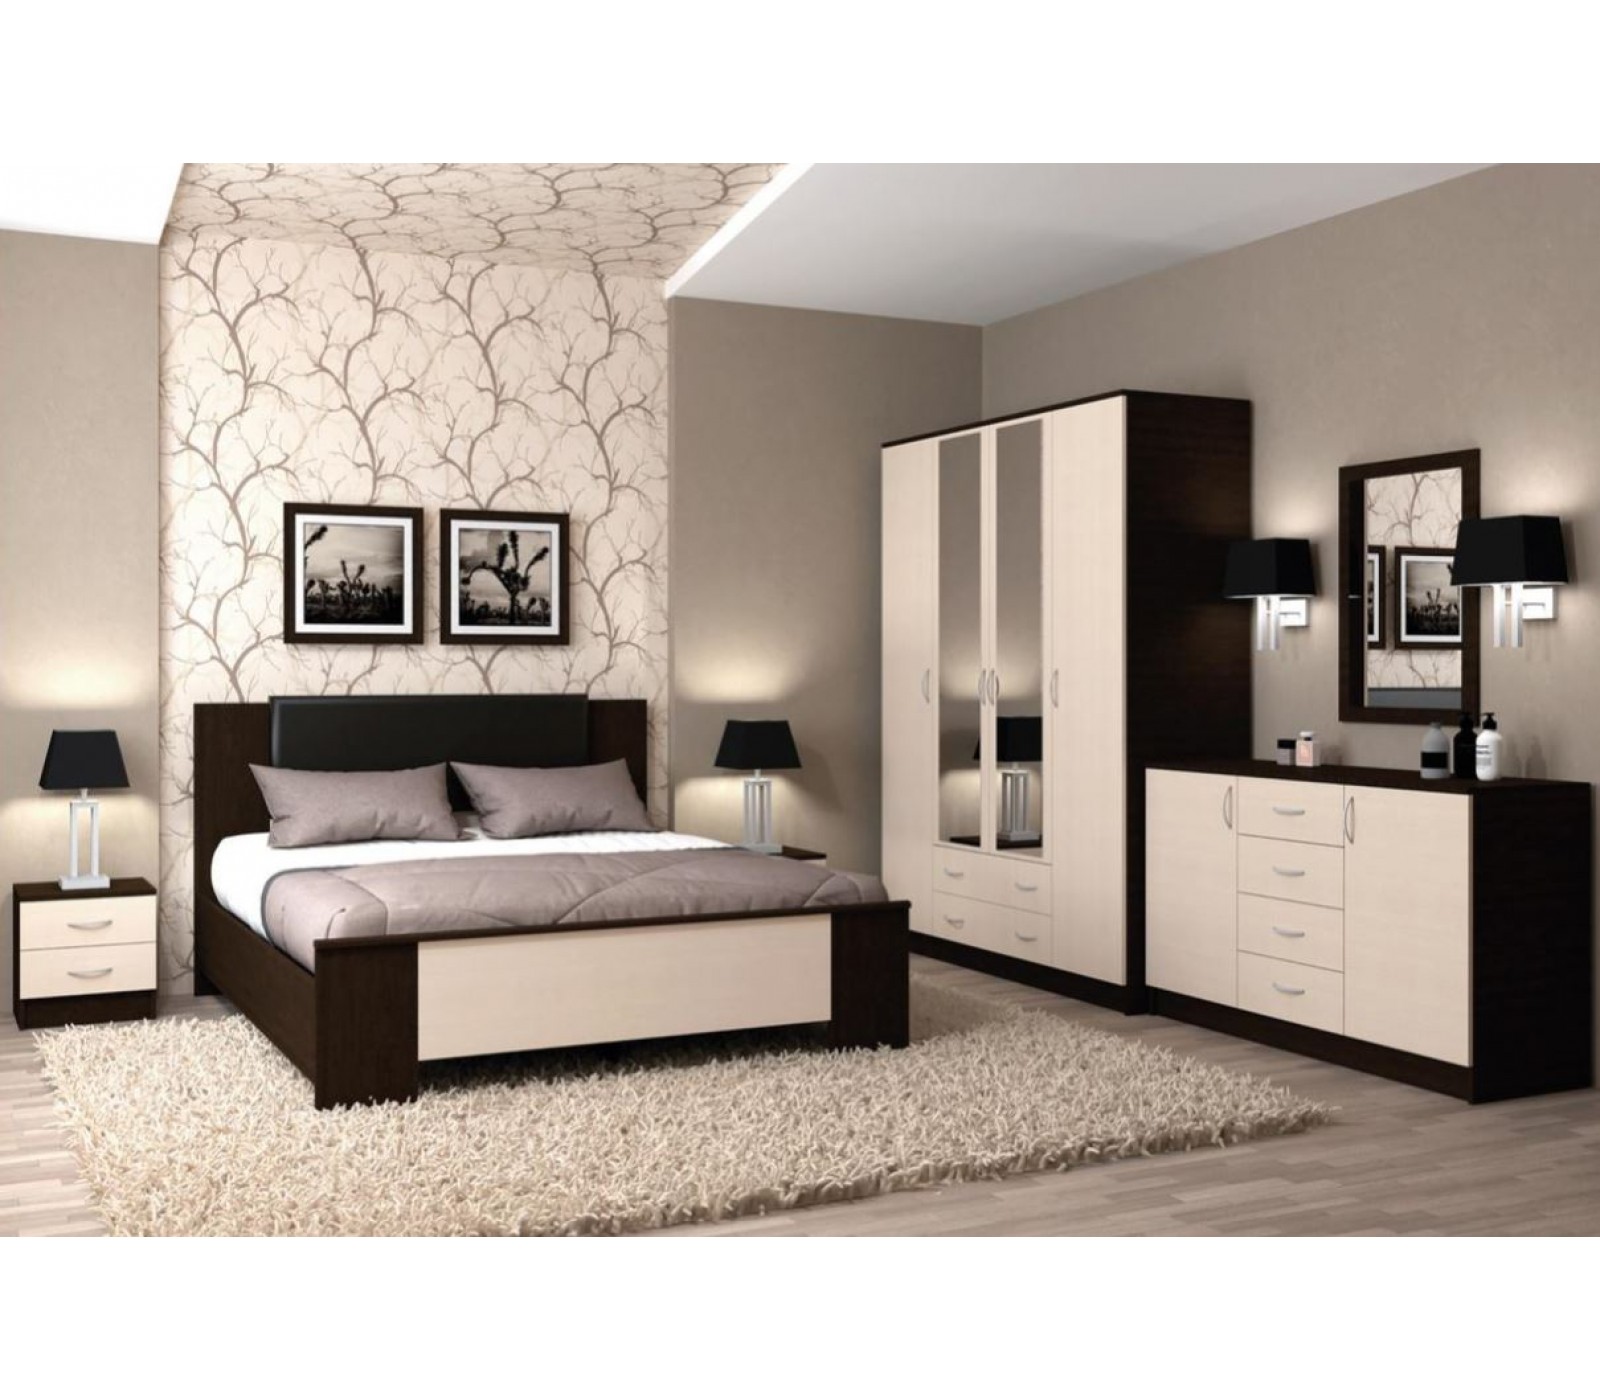 Какие варианты белой мебели в спальню встречаются